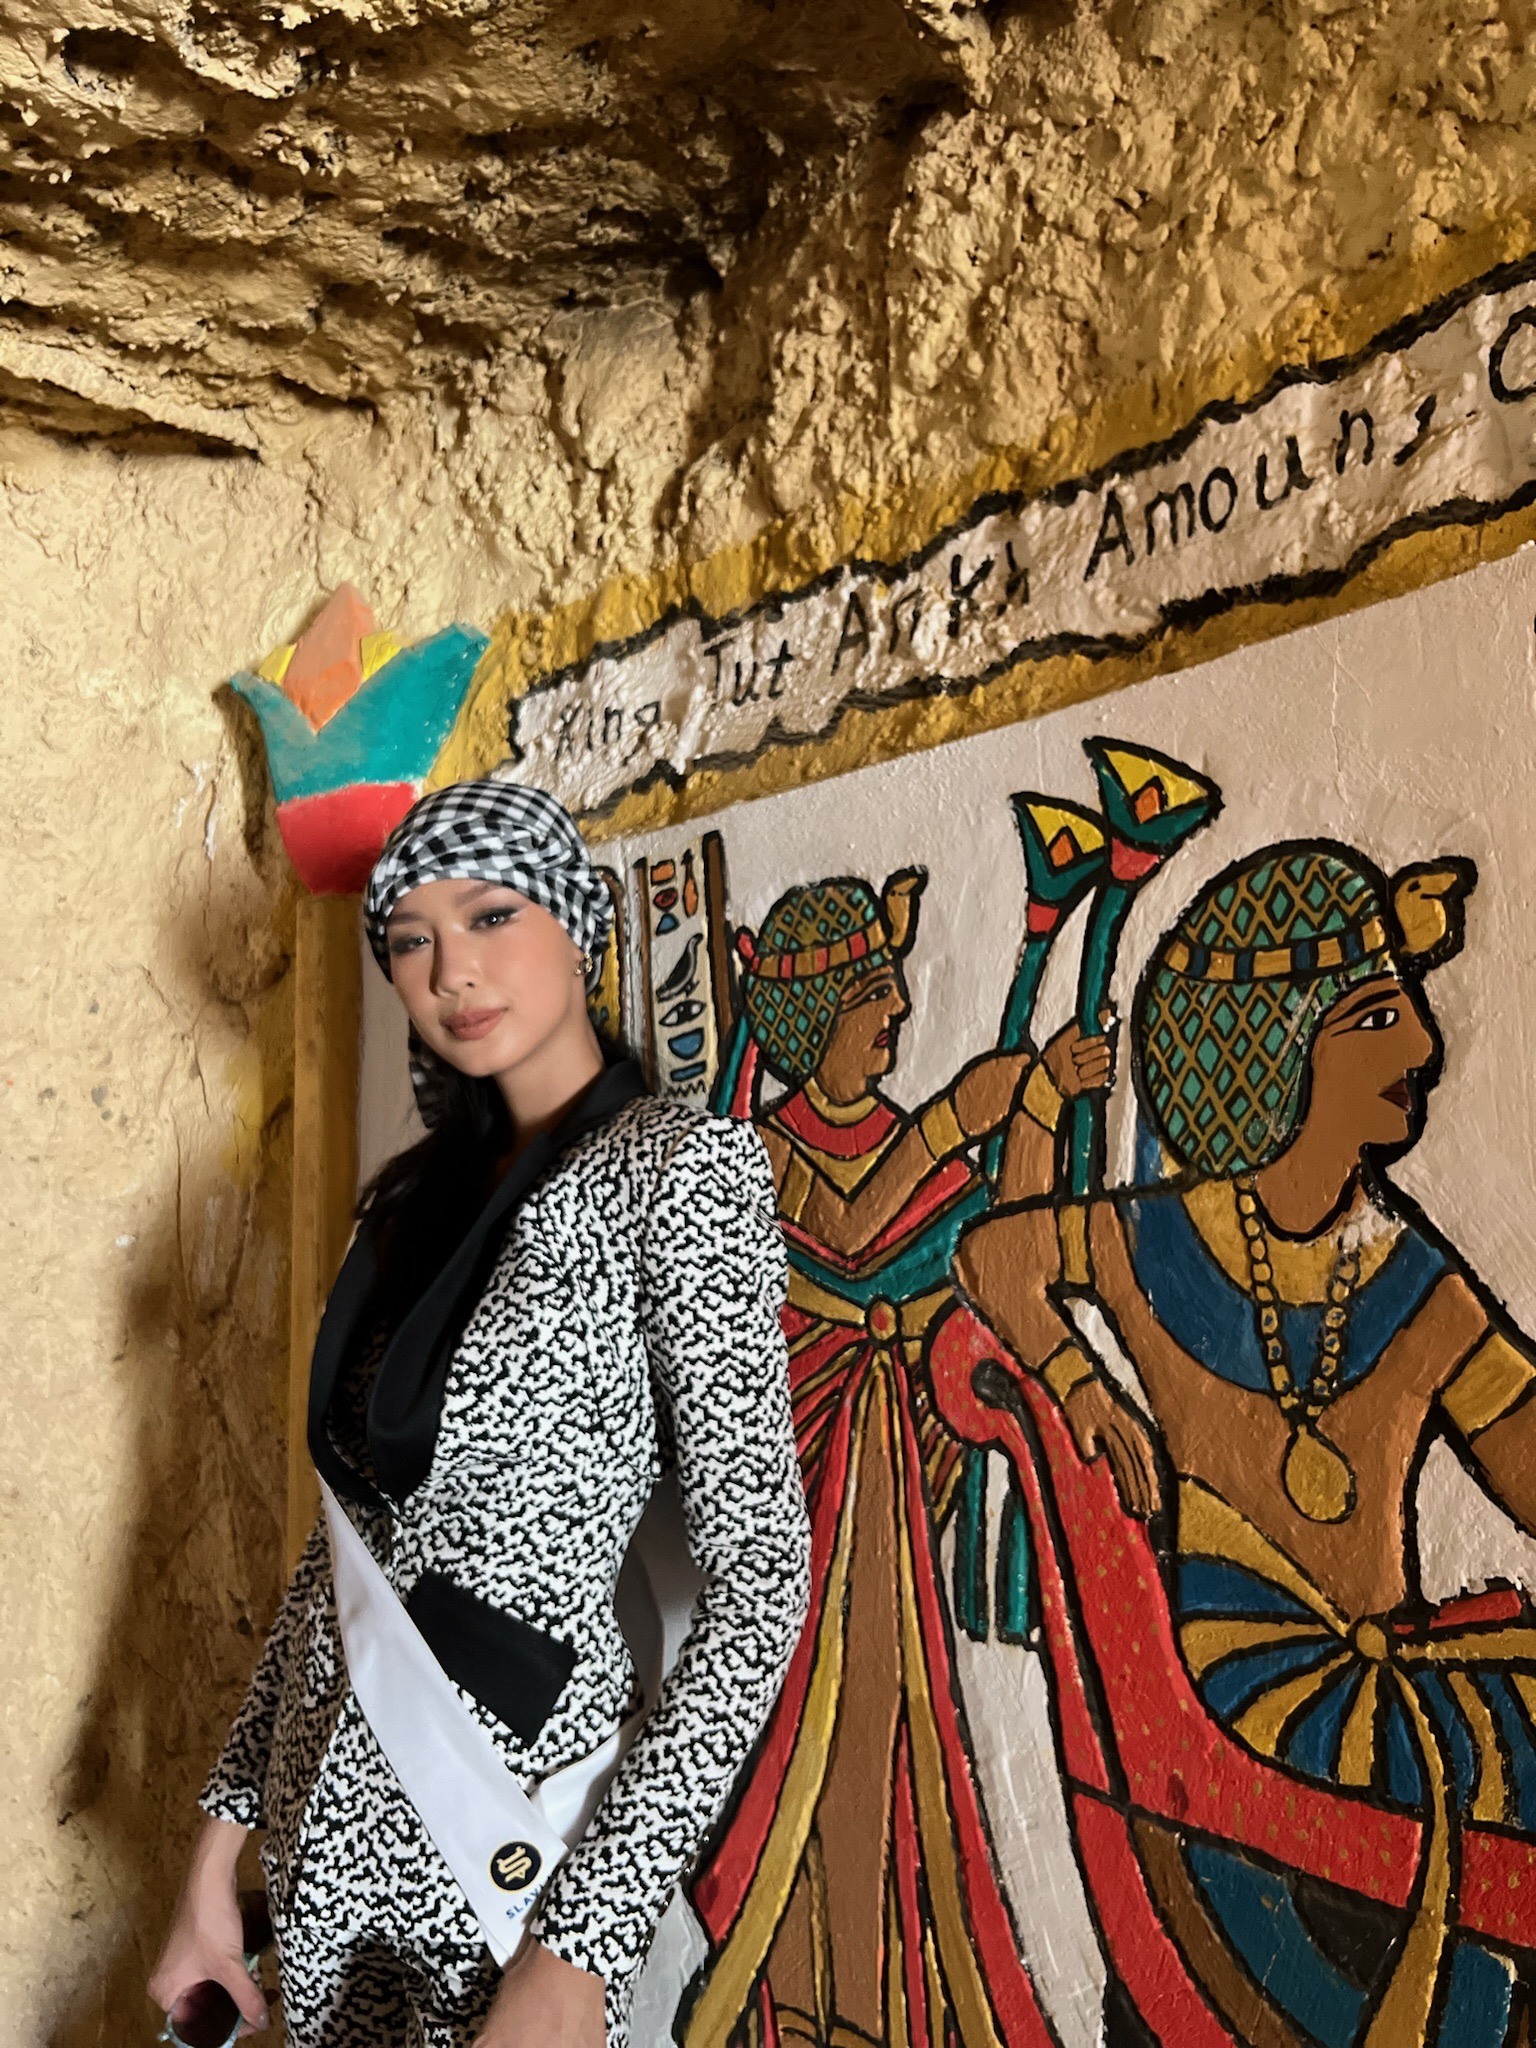 ng ta còn diện cho mình một bộ outfit cùng tone màu với chiếc khăn rằn hóa thân gái Cần Thơ để đến Ai Cập. T